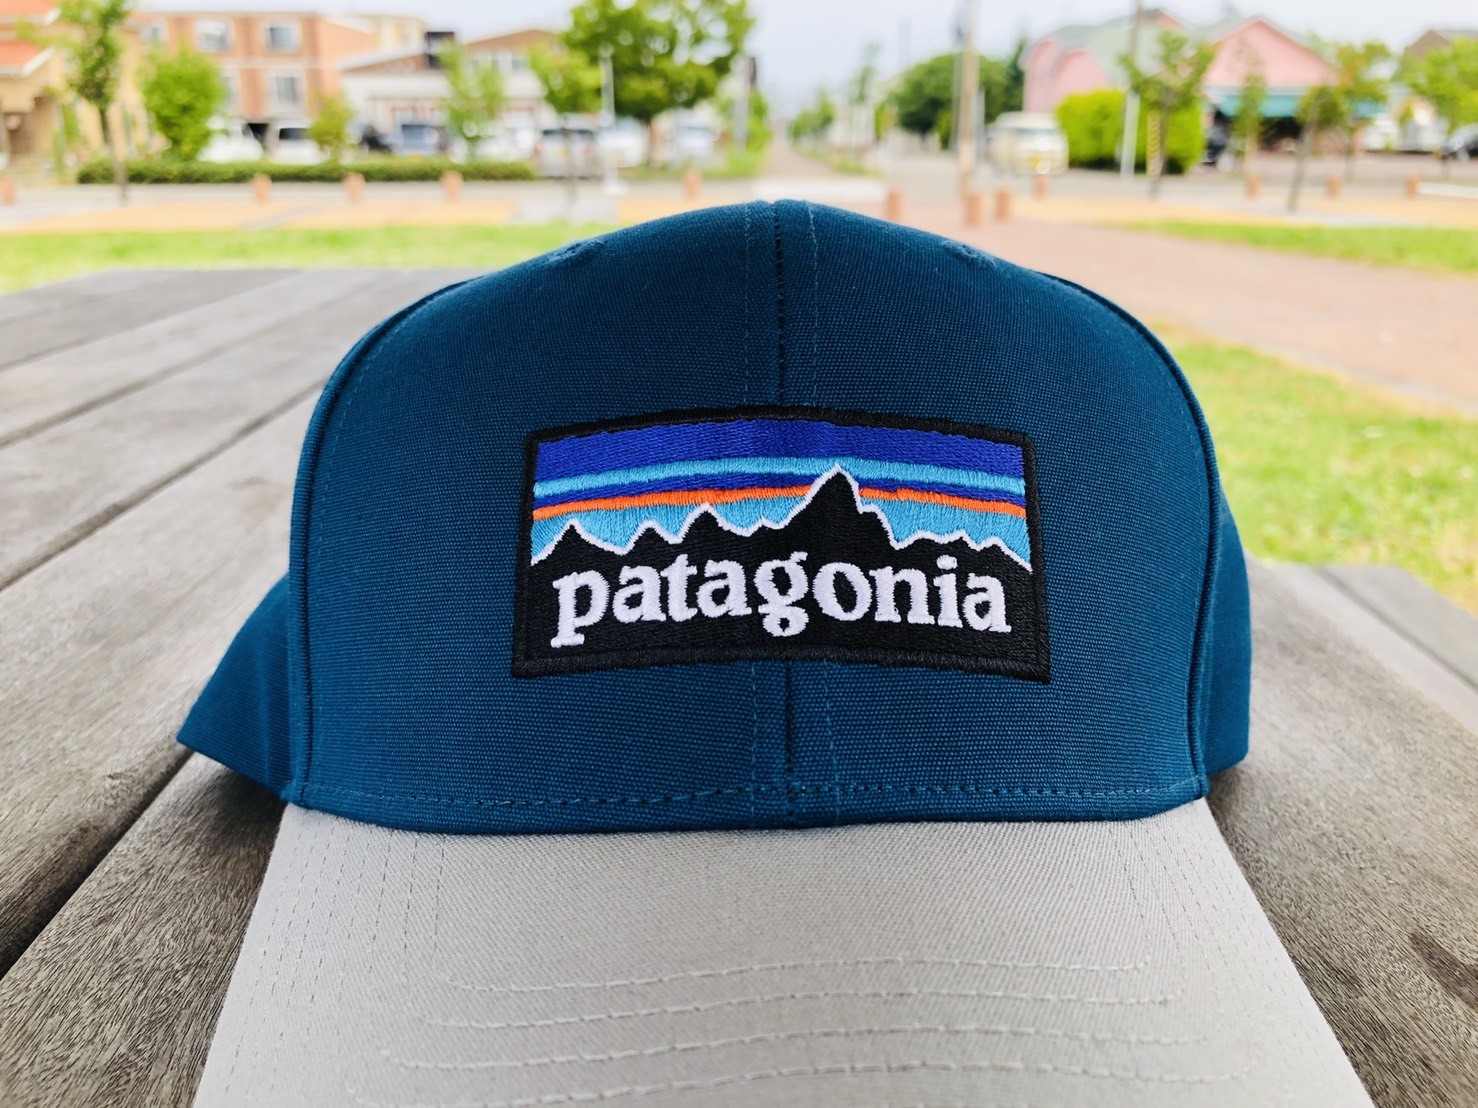 Patagonia/キャップ_b0139233_10452964.jpg